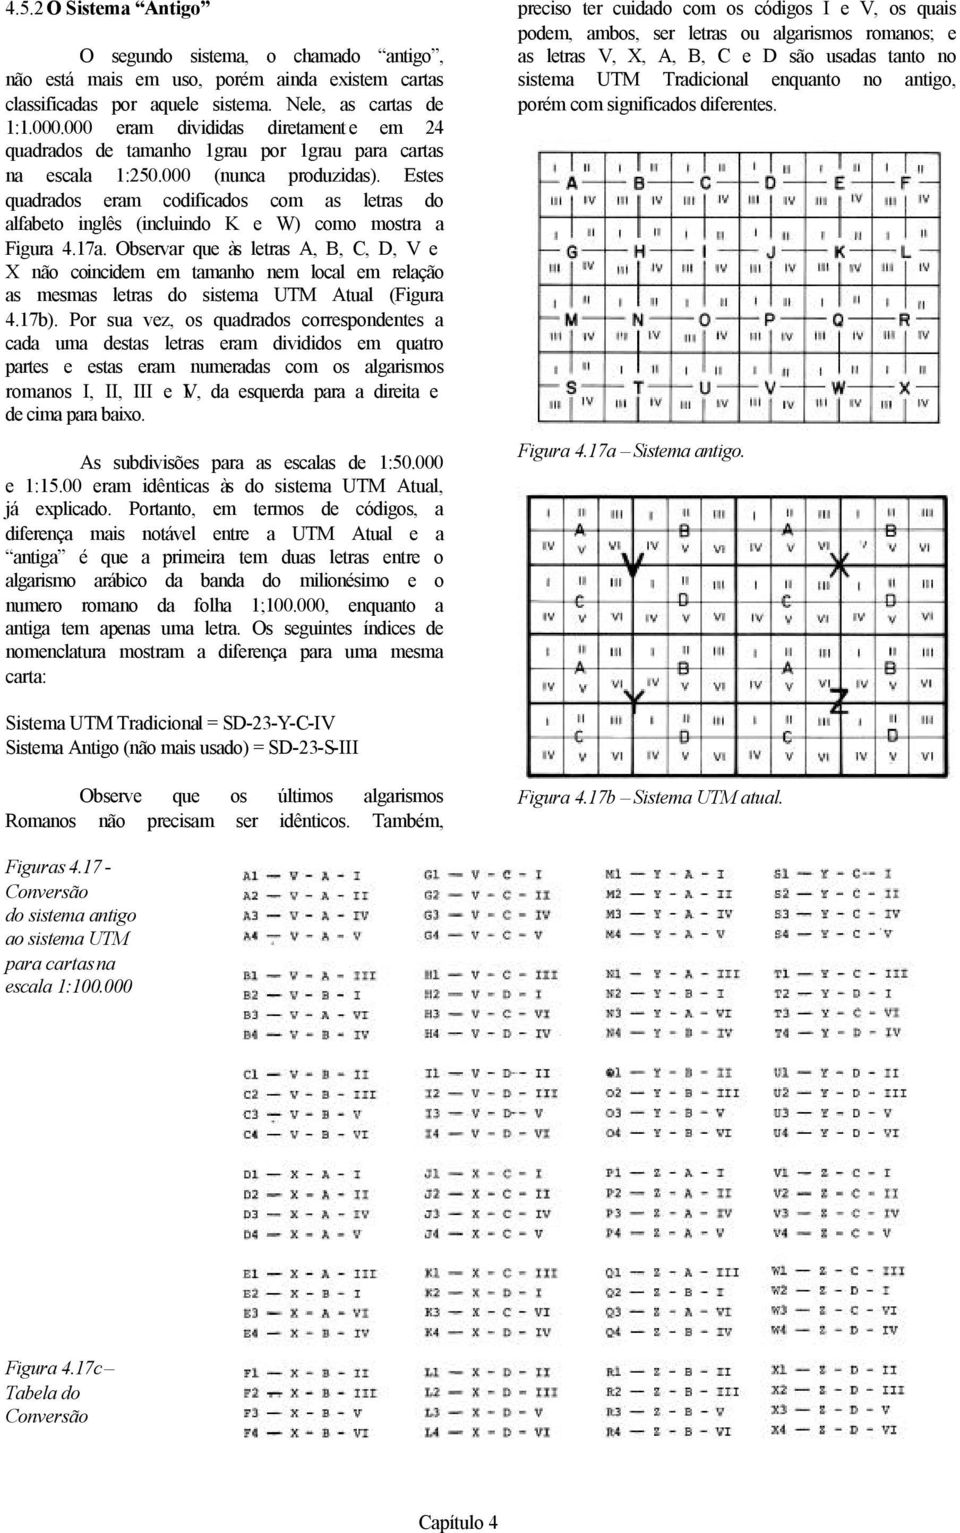 Estes quadrados eram codificados com as letras do alfabeto inglês (incluindo K e W) como mostra a Figura 4.17a.